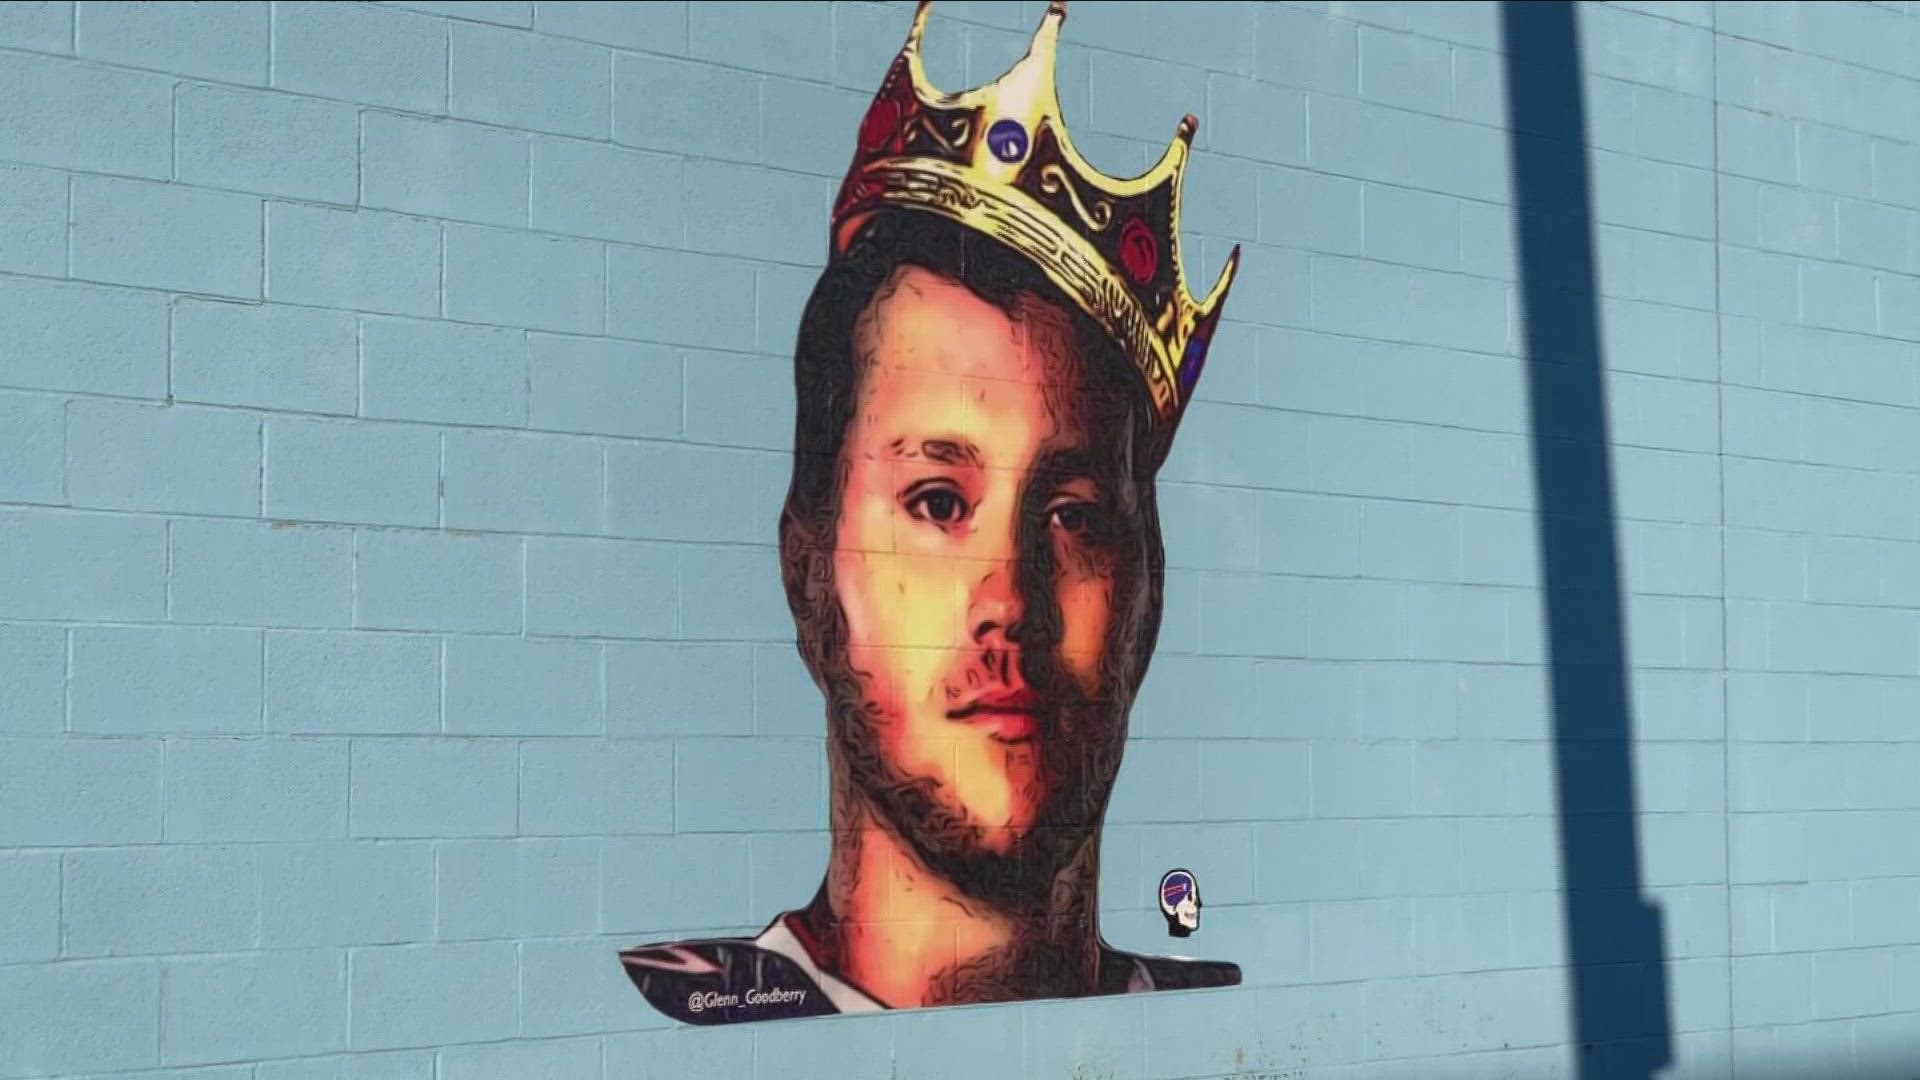 A new mural of King Josh in Niagara Falls